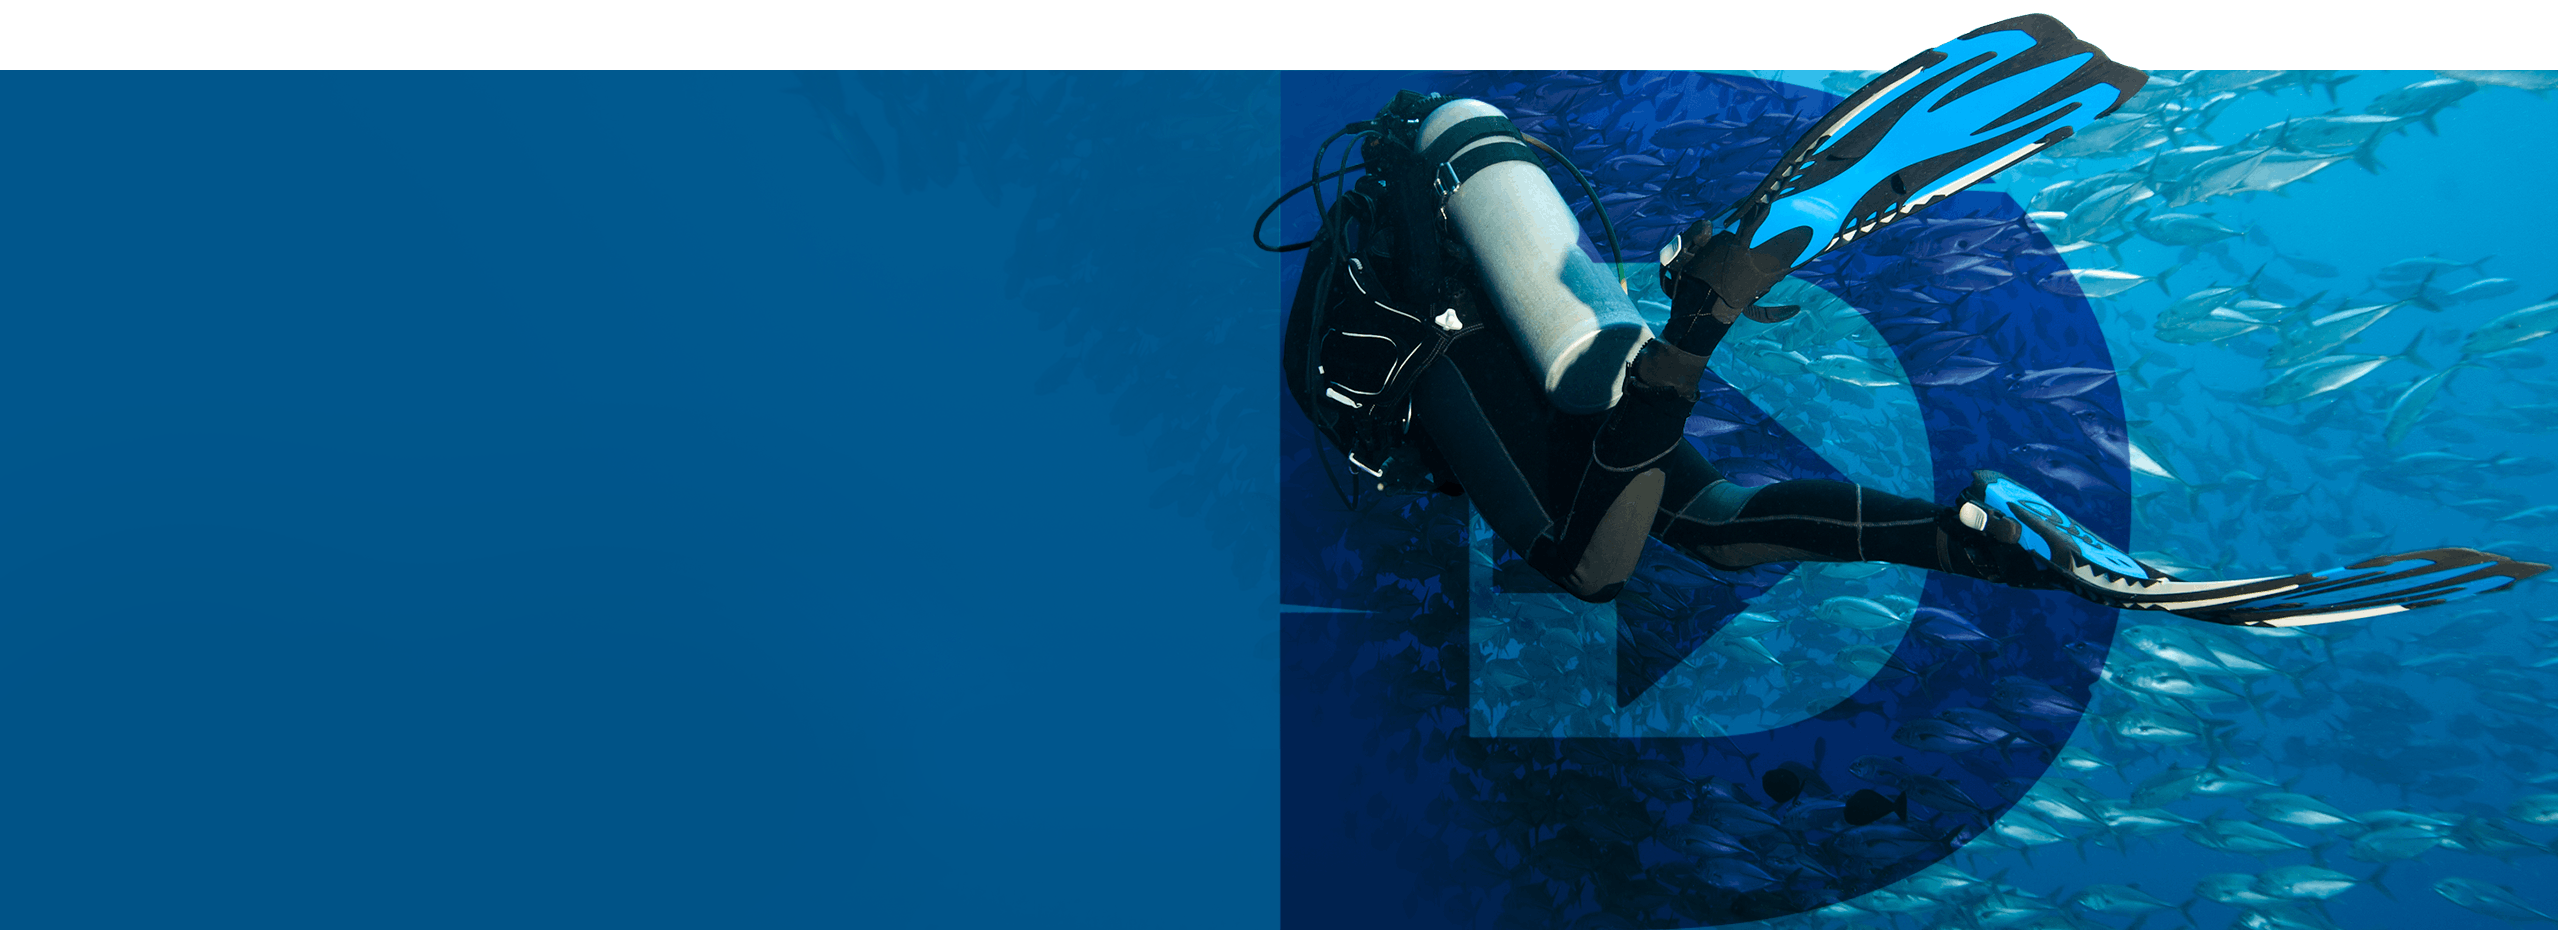 Scuba Diver underwater